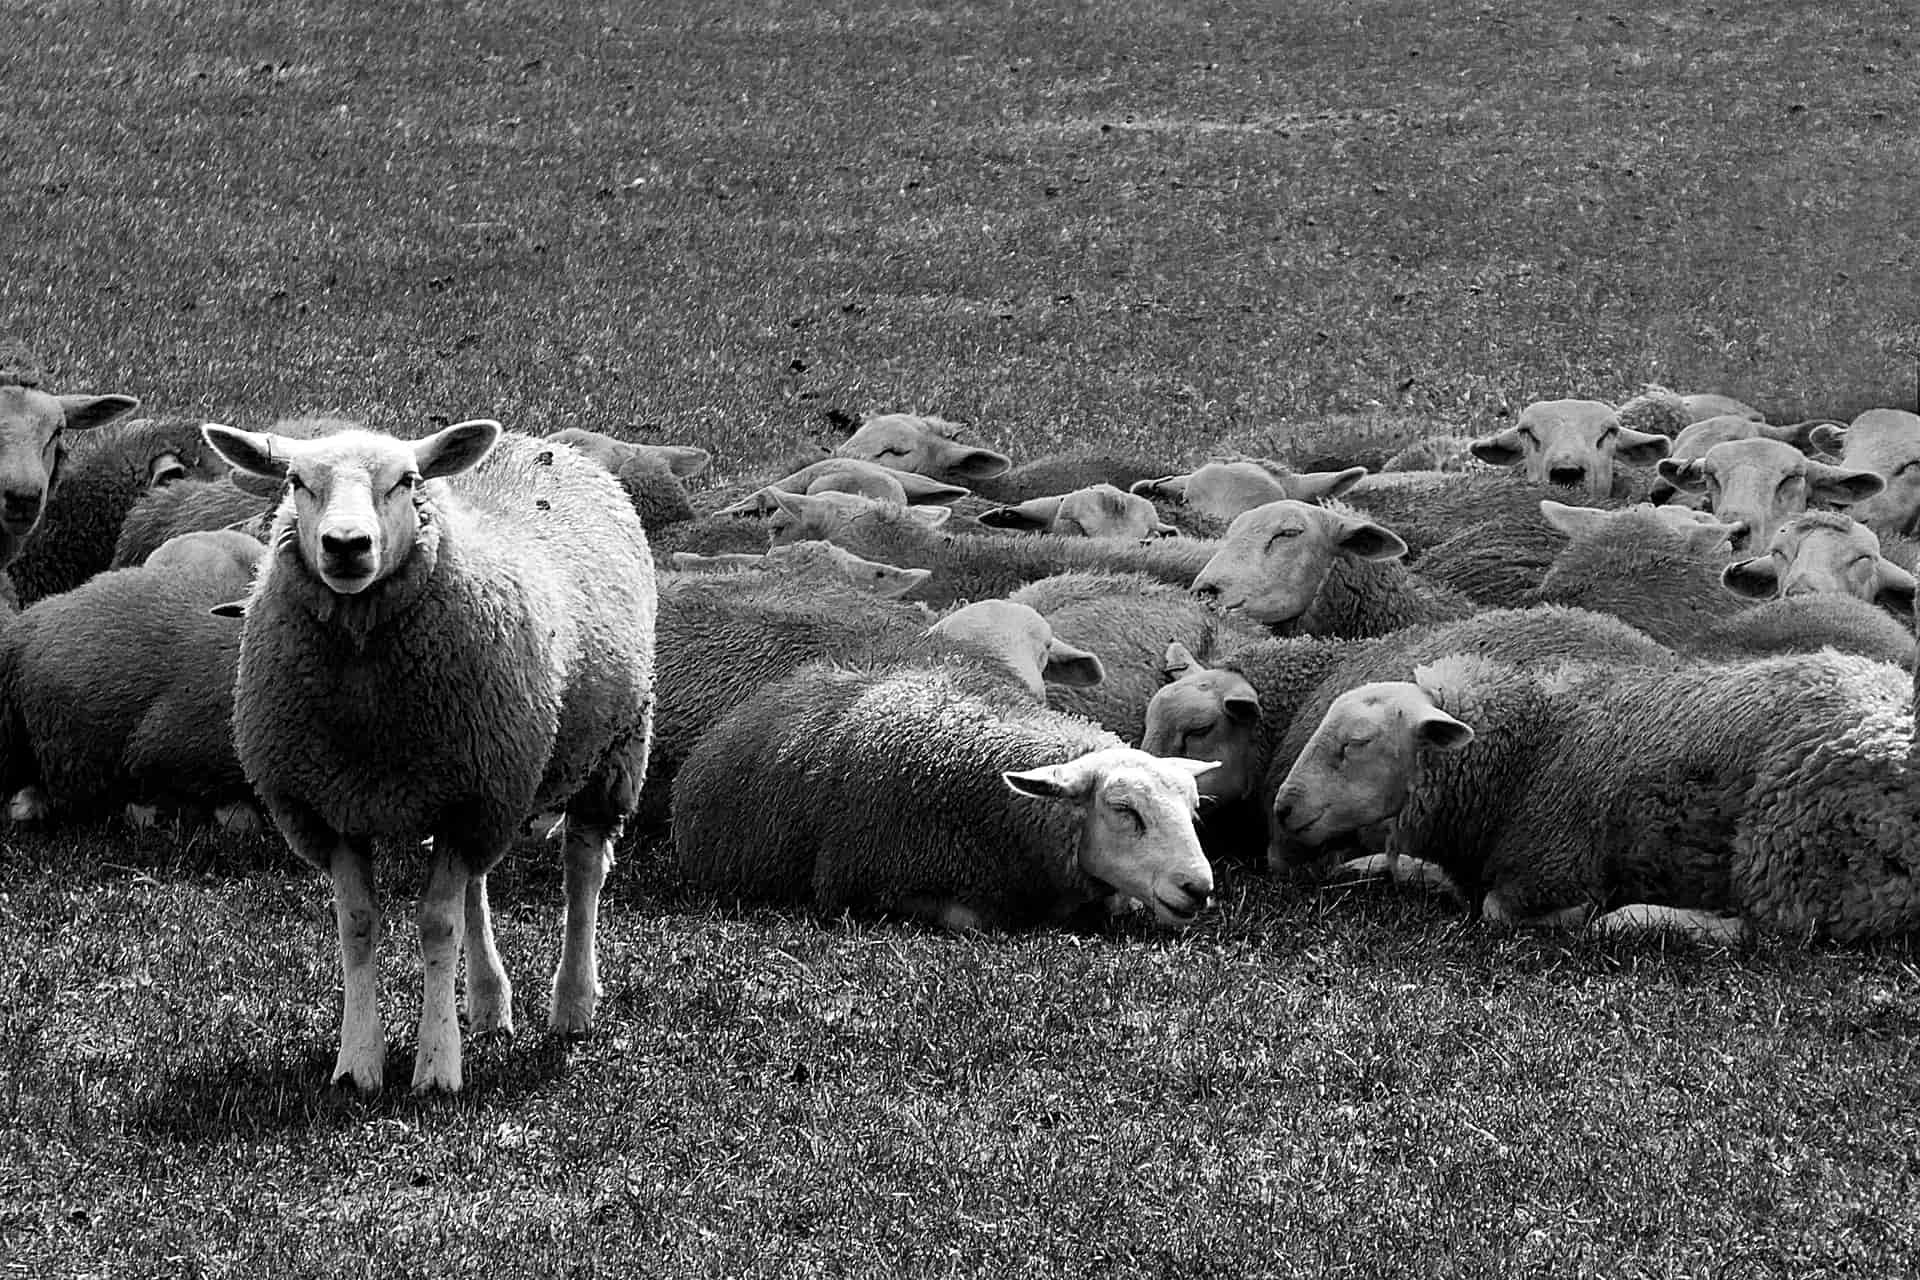 blog01 image - one standing sheep among sleeping sheep